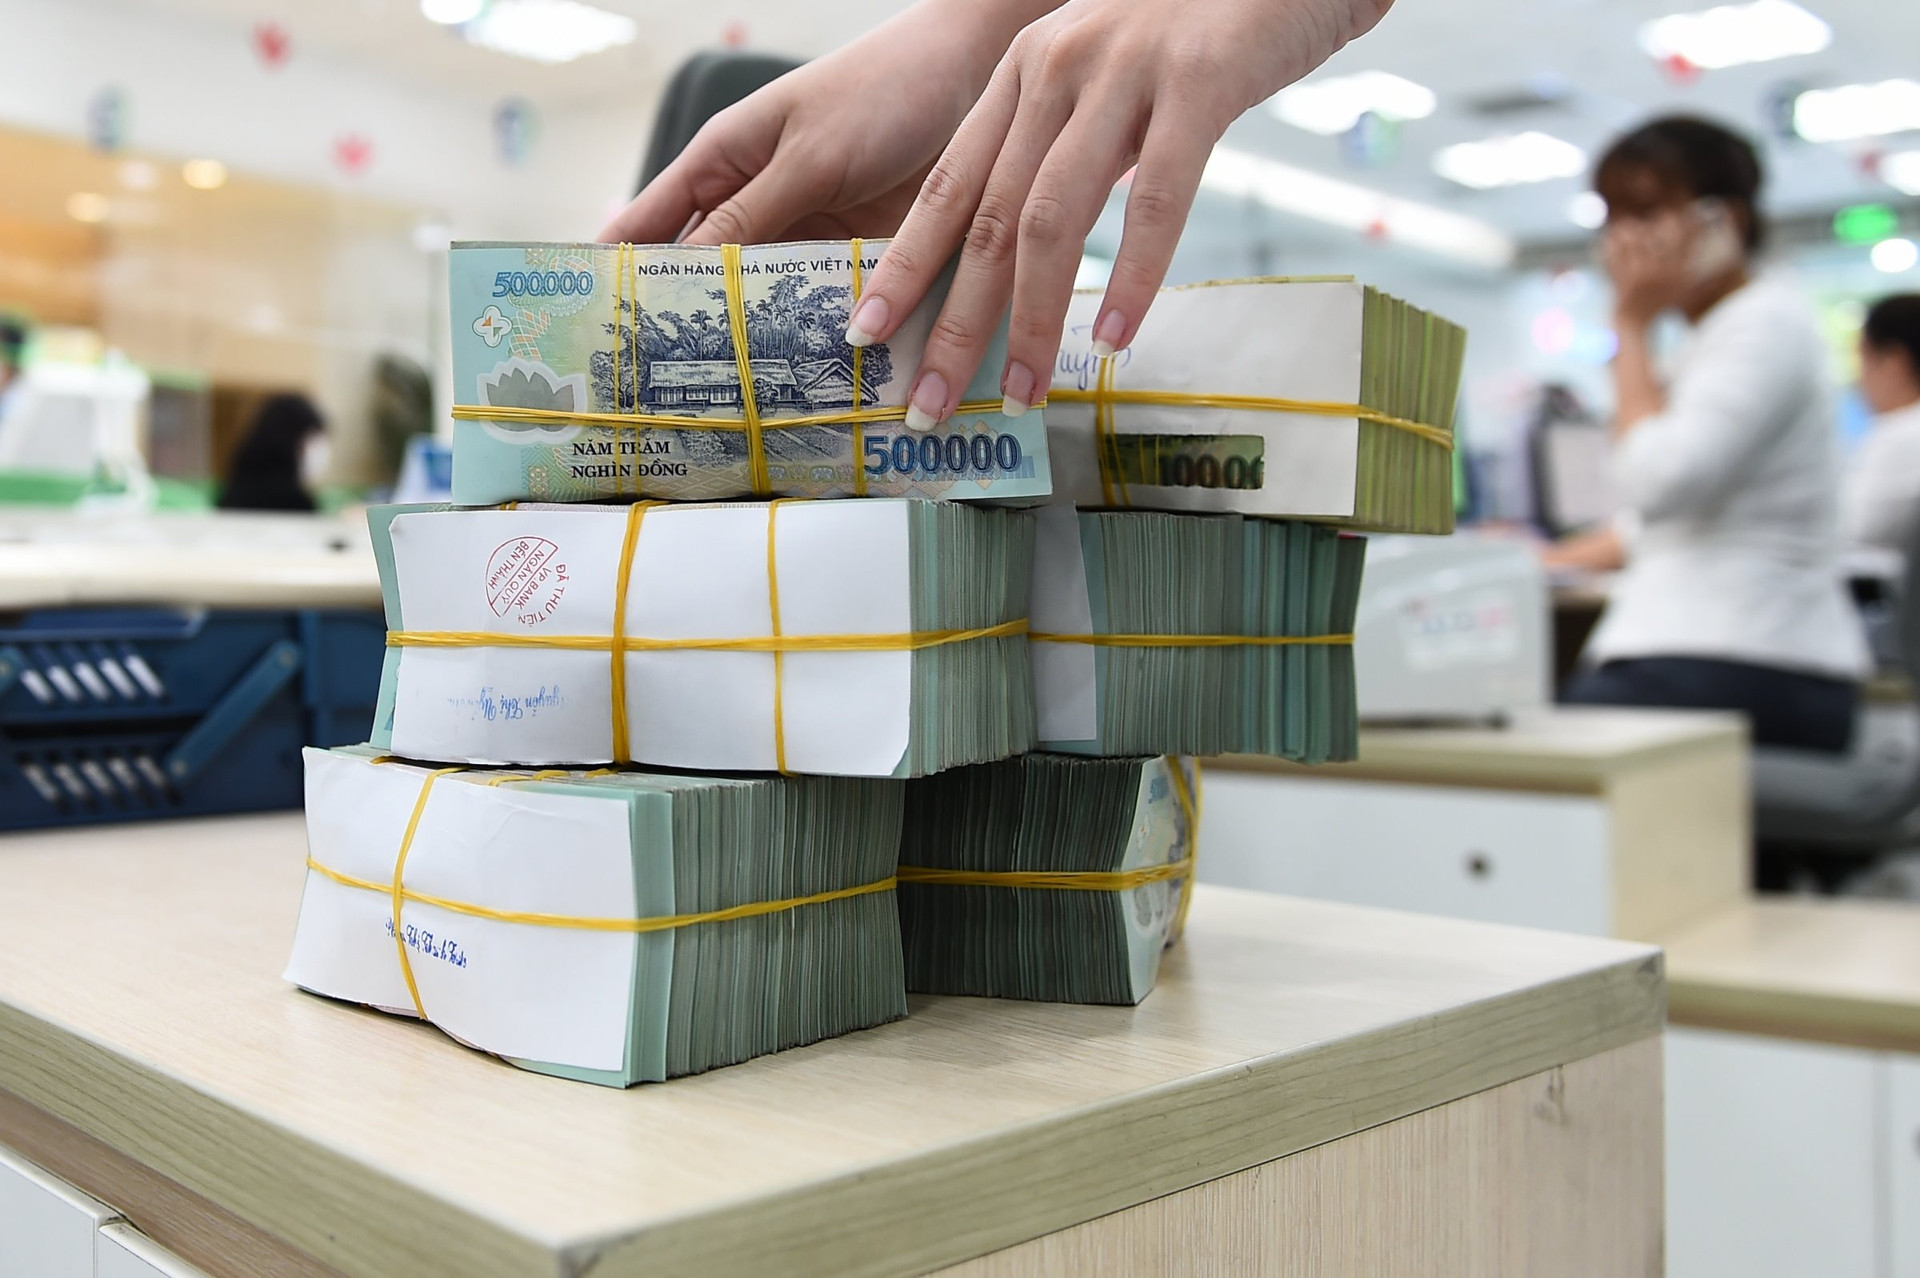 Cận Tết, ngân hàng Agribank rao bán thanh lý loạt bất động sản phía Nam, có tài sản trị giá hàng trăm tỉ đồng- Ảnh 1.